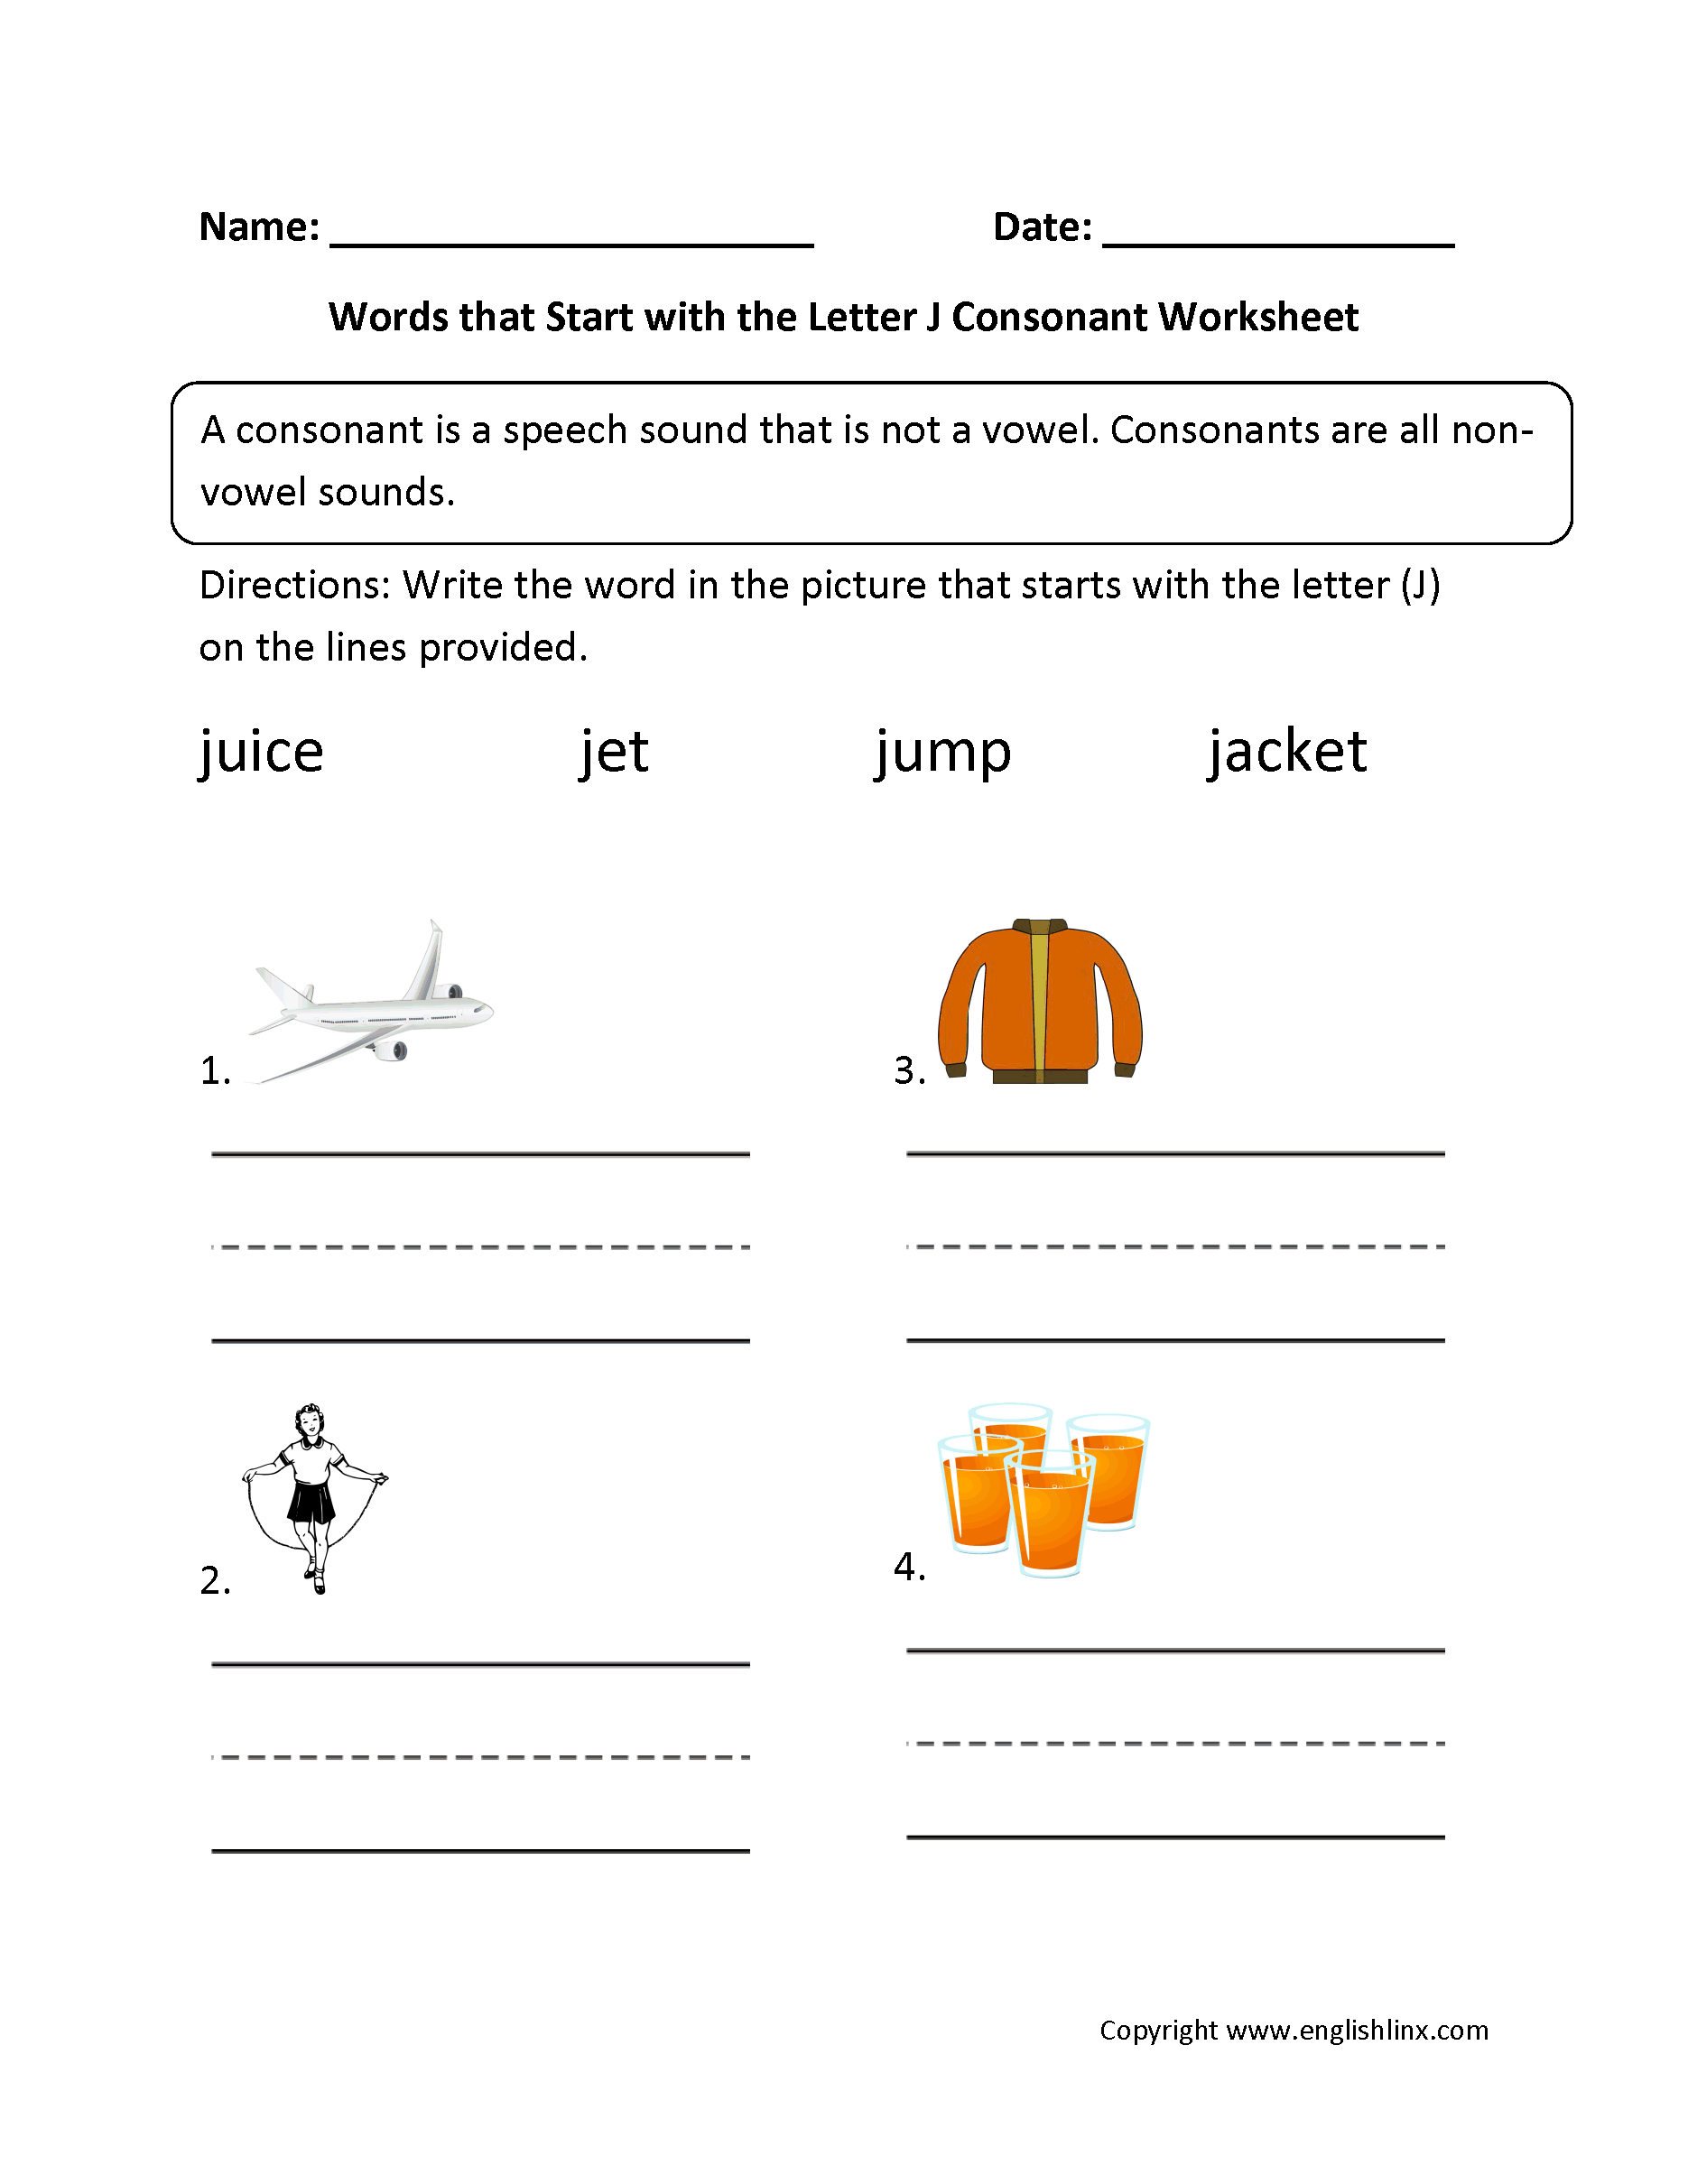 Words Start Letter J Consonant Worksheets